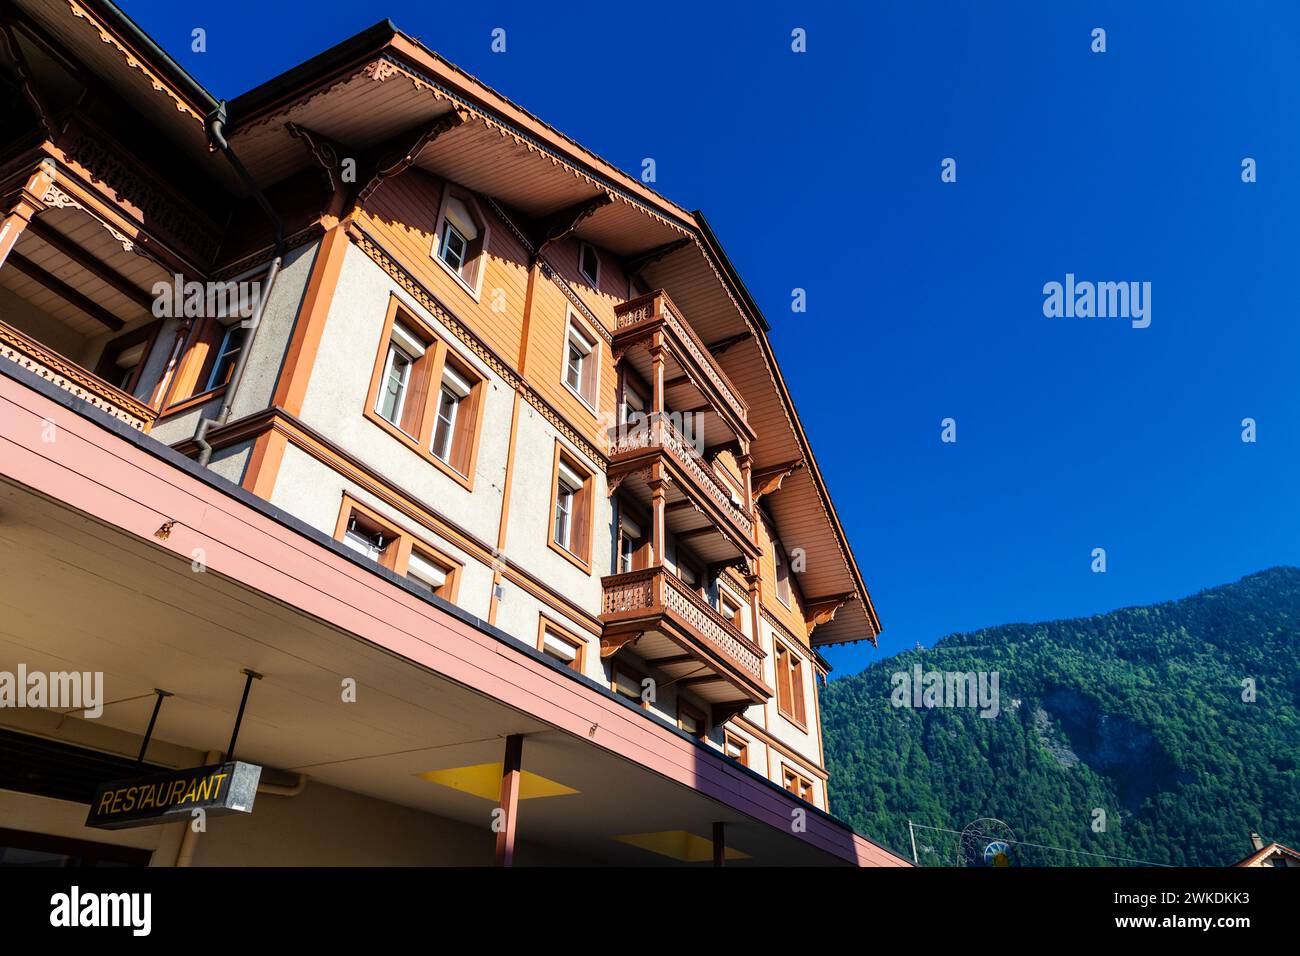 Colourful Swiss chalet in Matten bei Interlaken, Switzerland Stock Photo